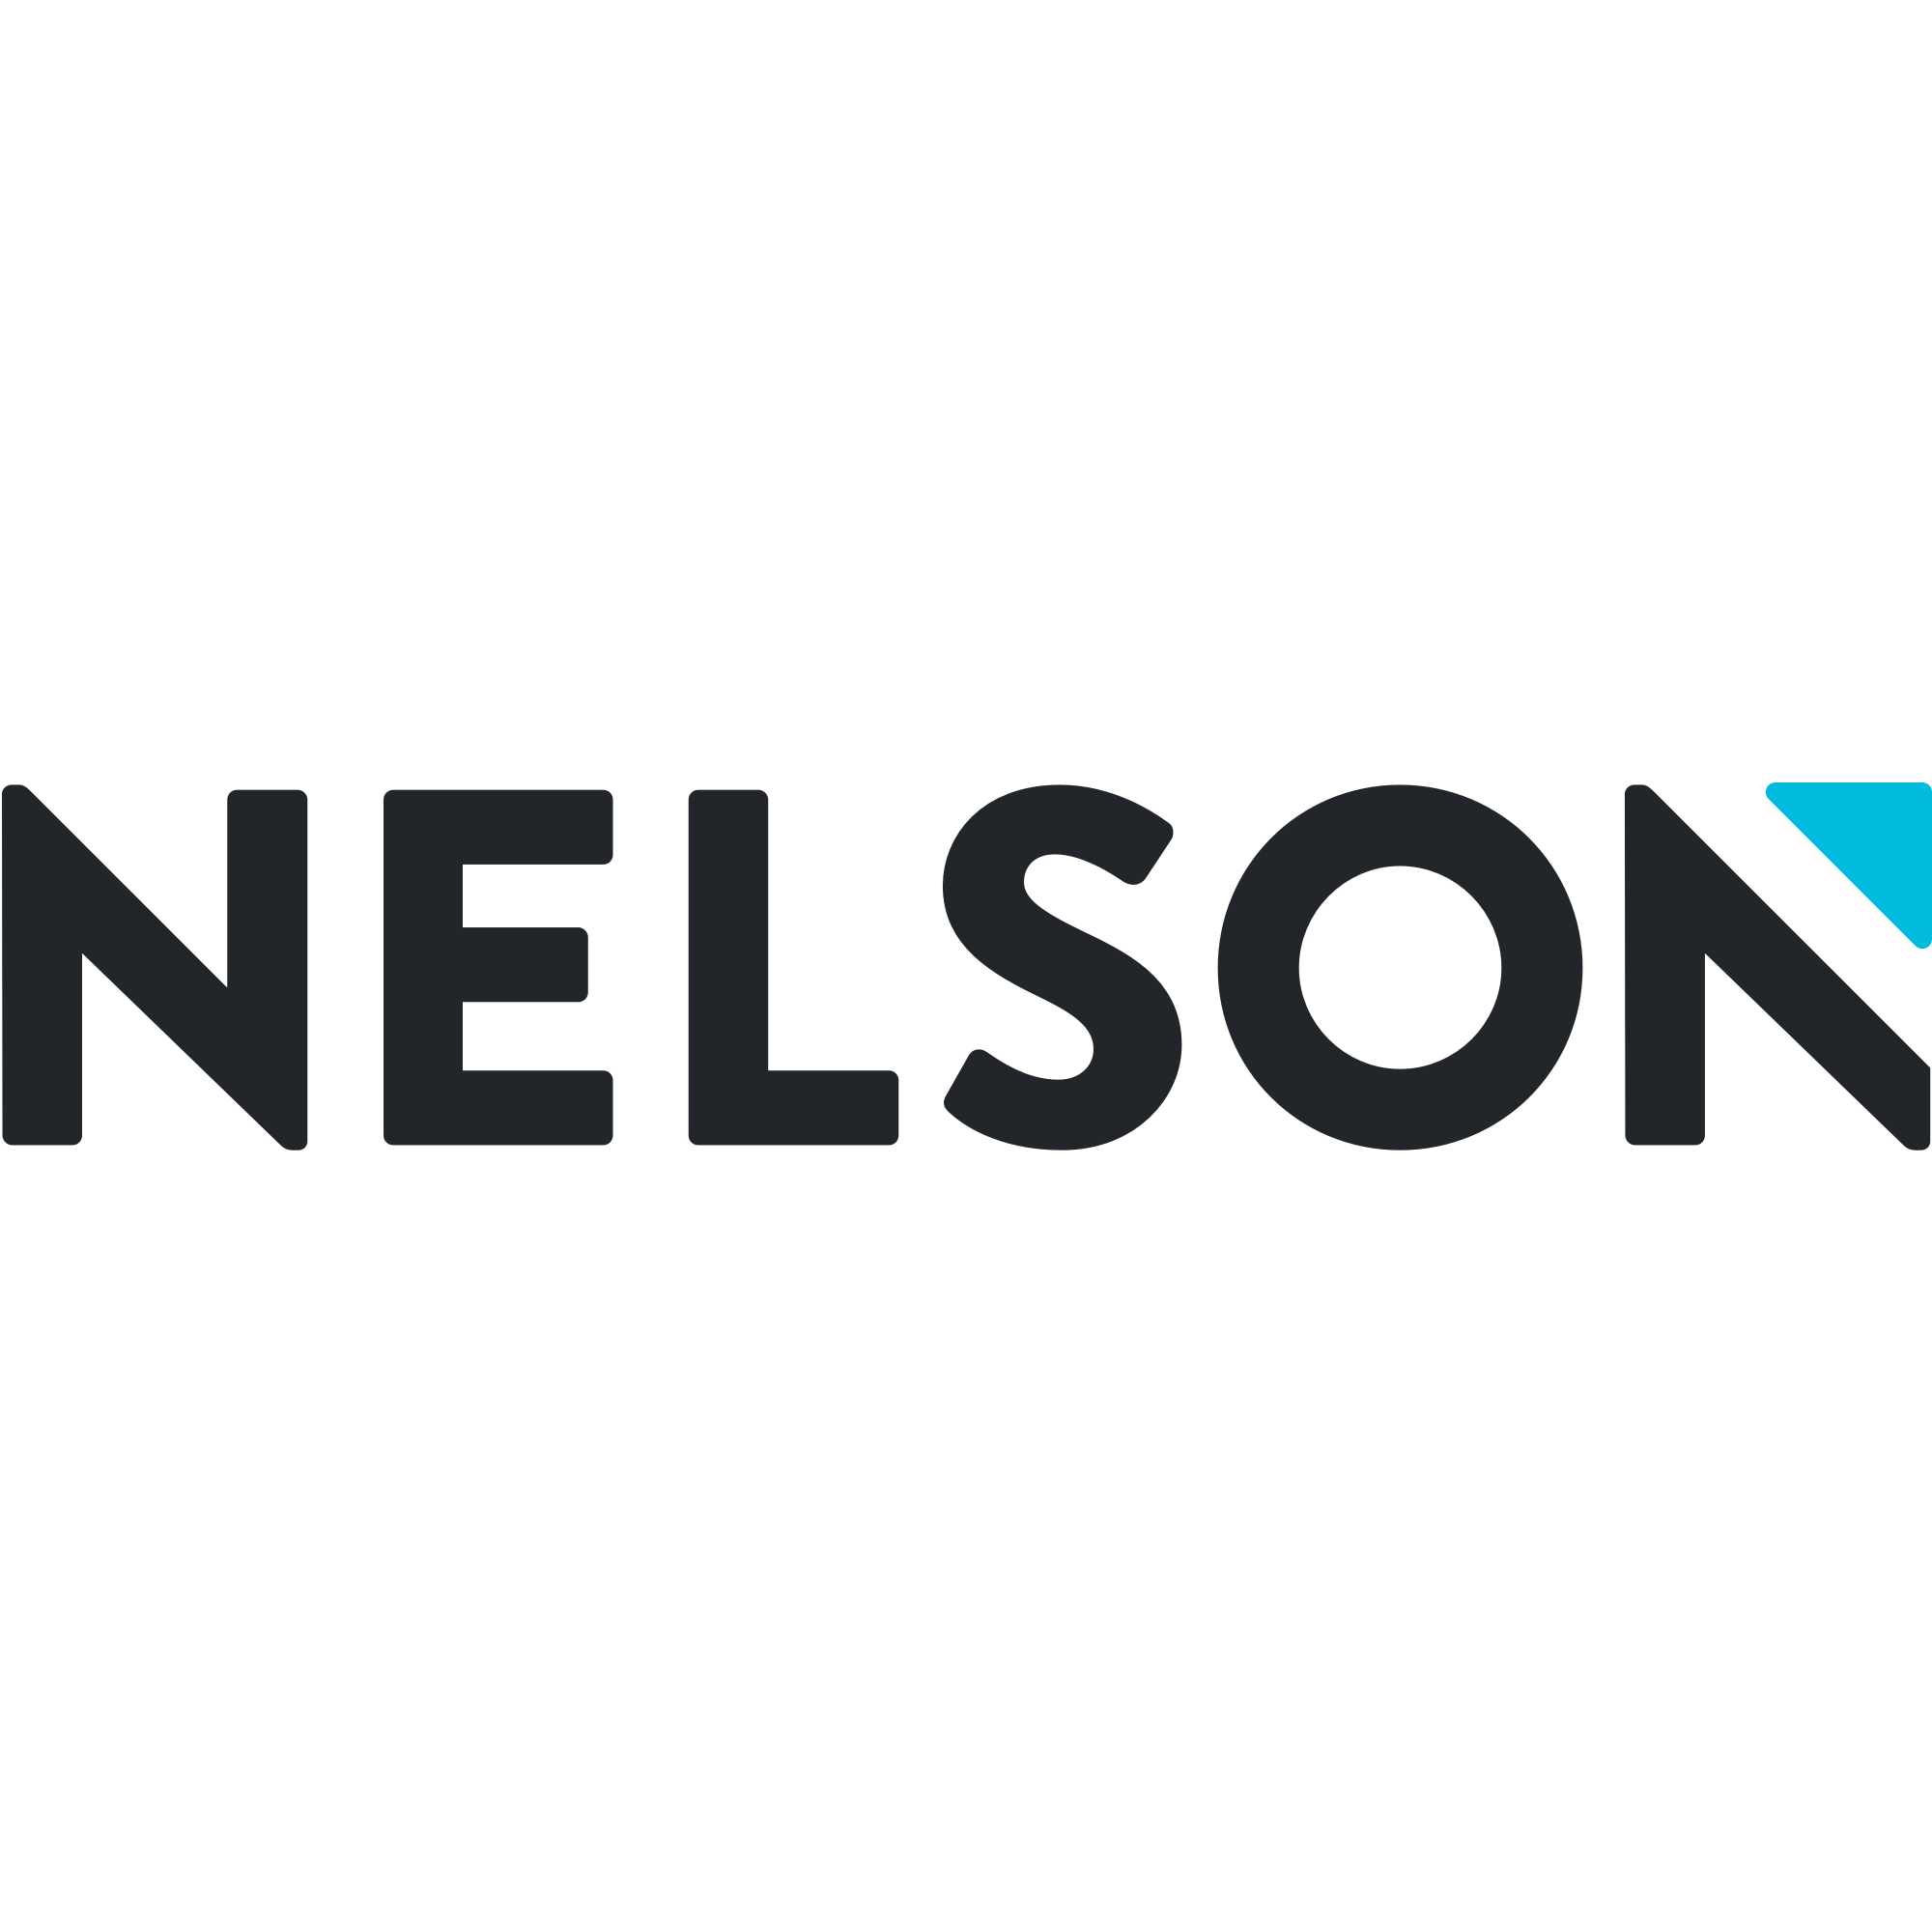 Nelson Logo